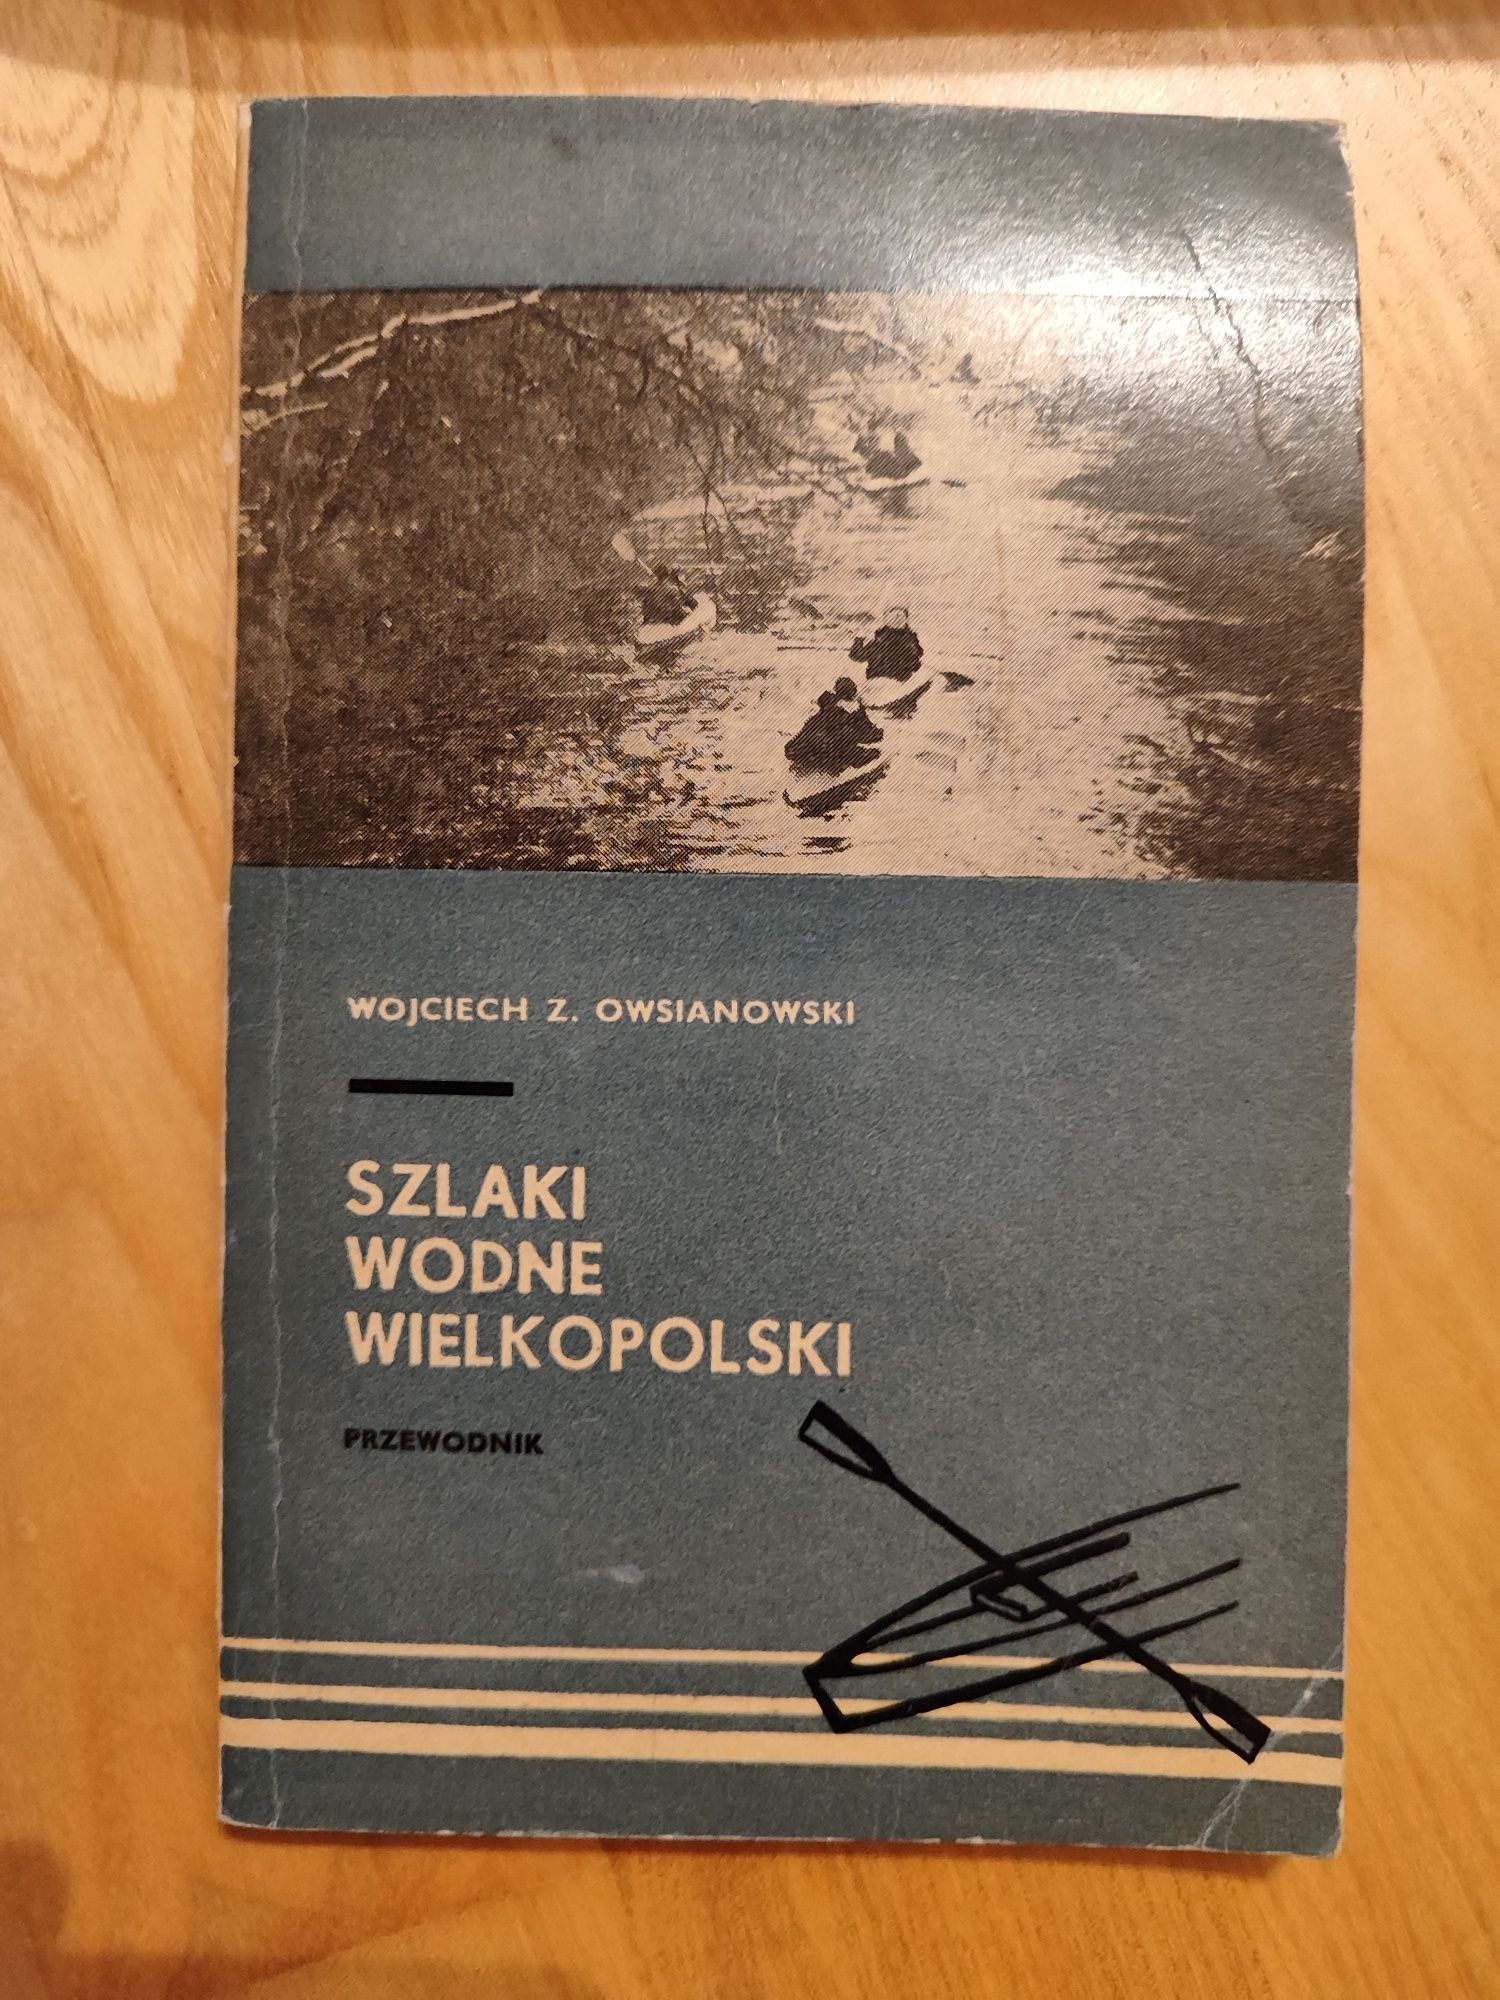 Szlaki wodne wielkopolski Osianowski przewodnik książka kajaki 1972